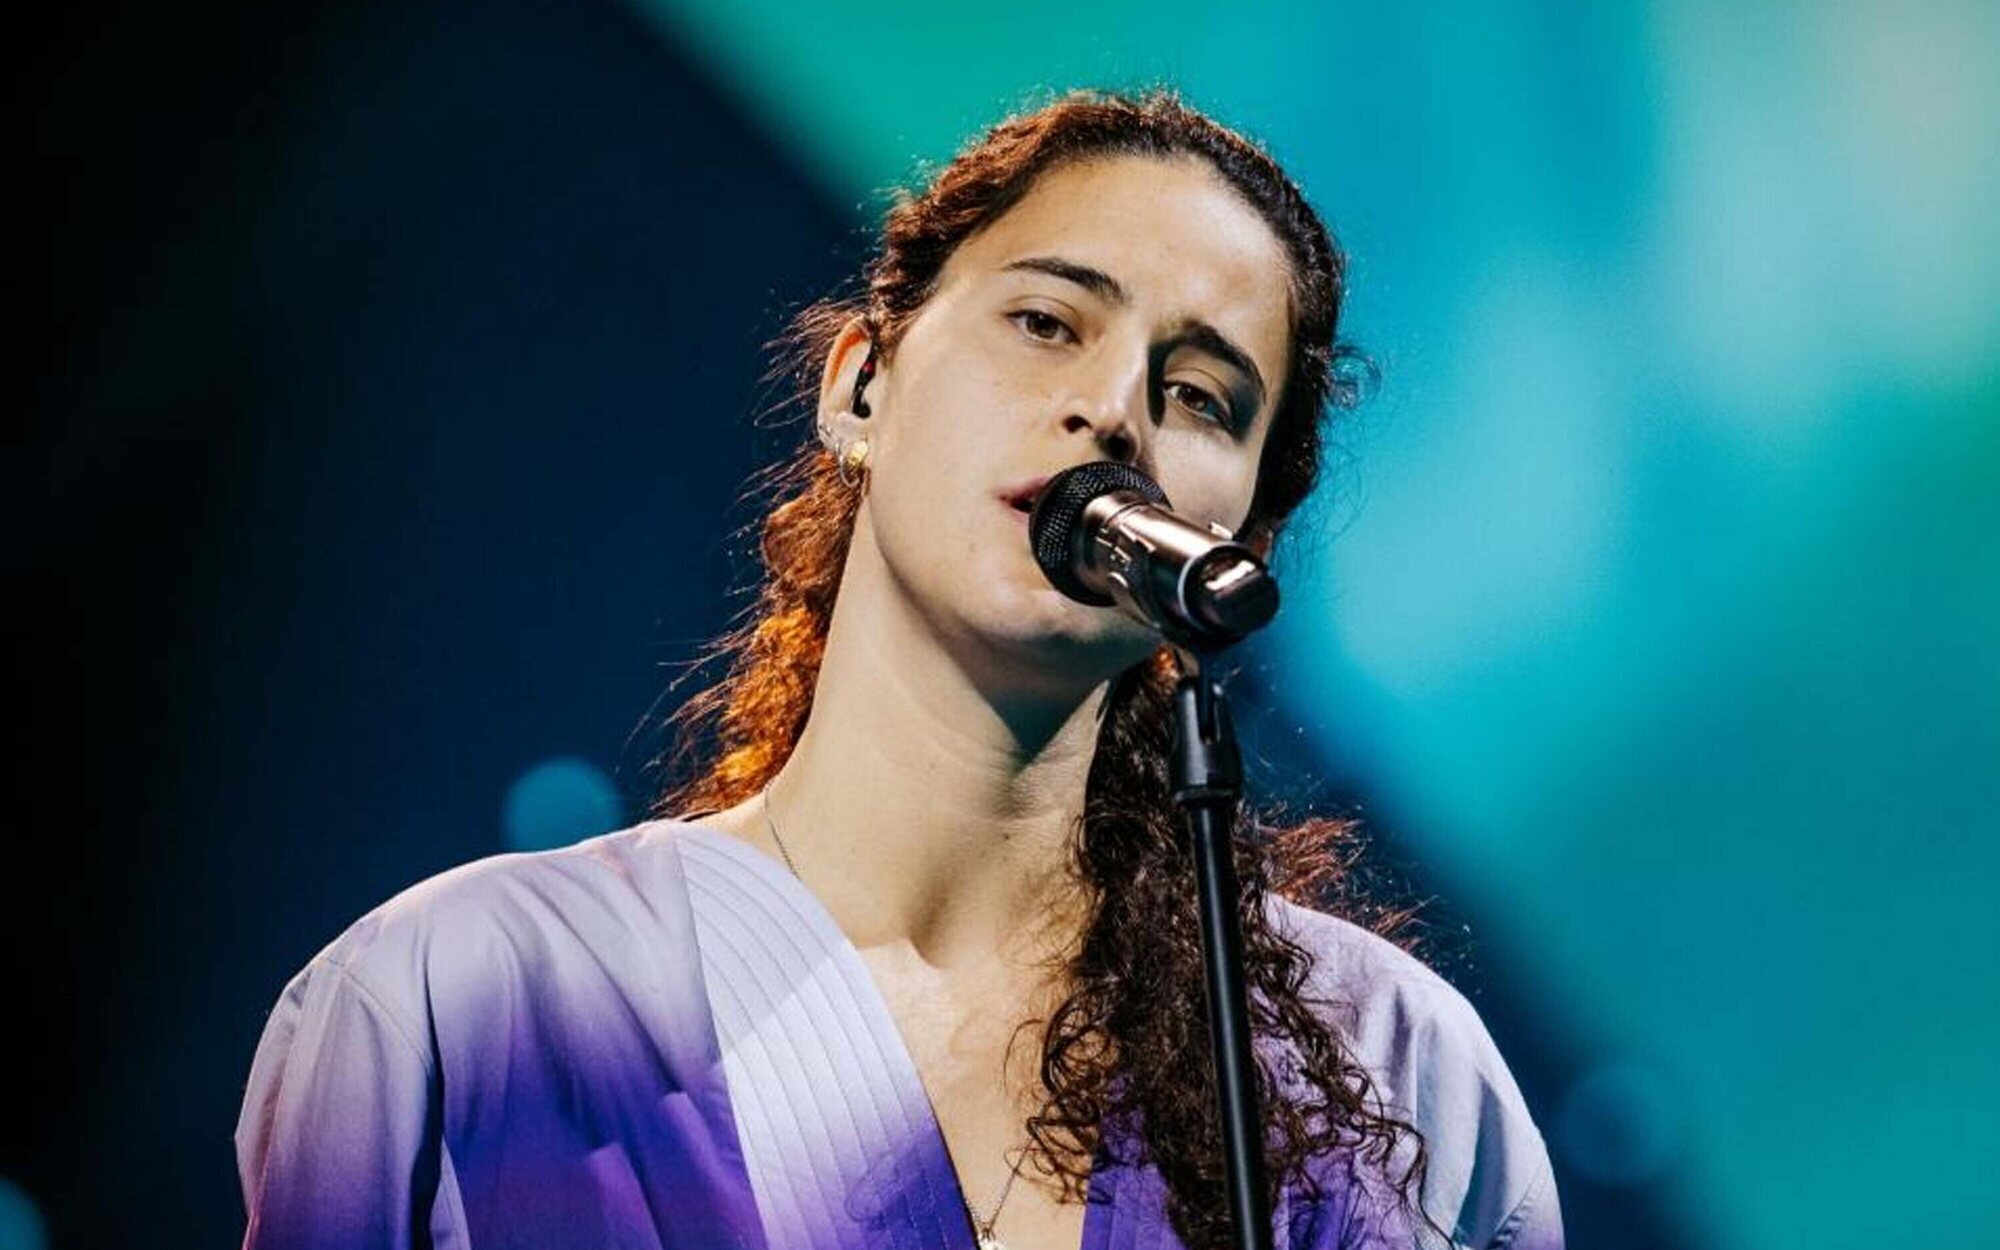 Eurovisión 2022: Portugal y Grecia, aplaudidas tras sus primeros ensayos